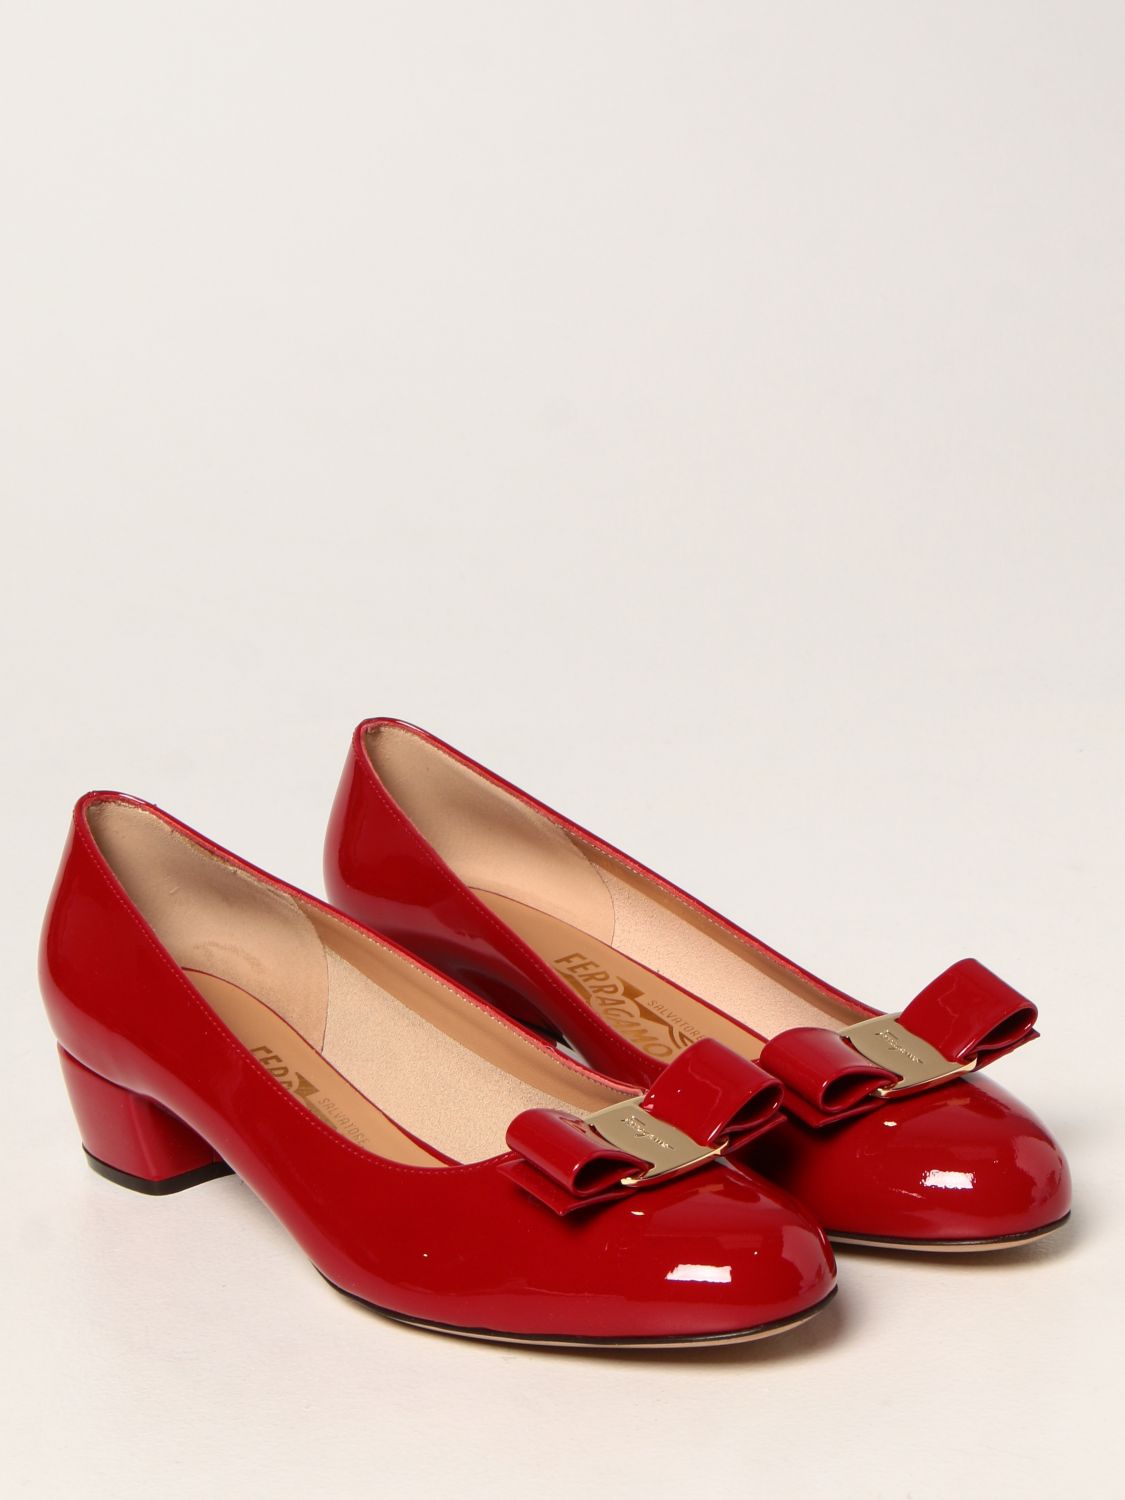 Manoletinas Salvatore Ferragamo: Zapatos mujer Salvatore Ferragamo rojo 2